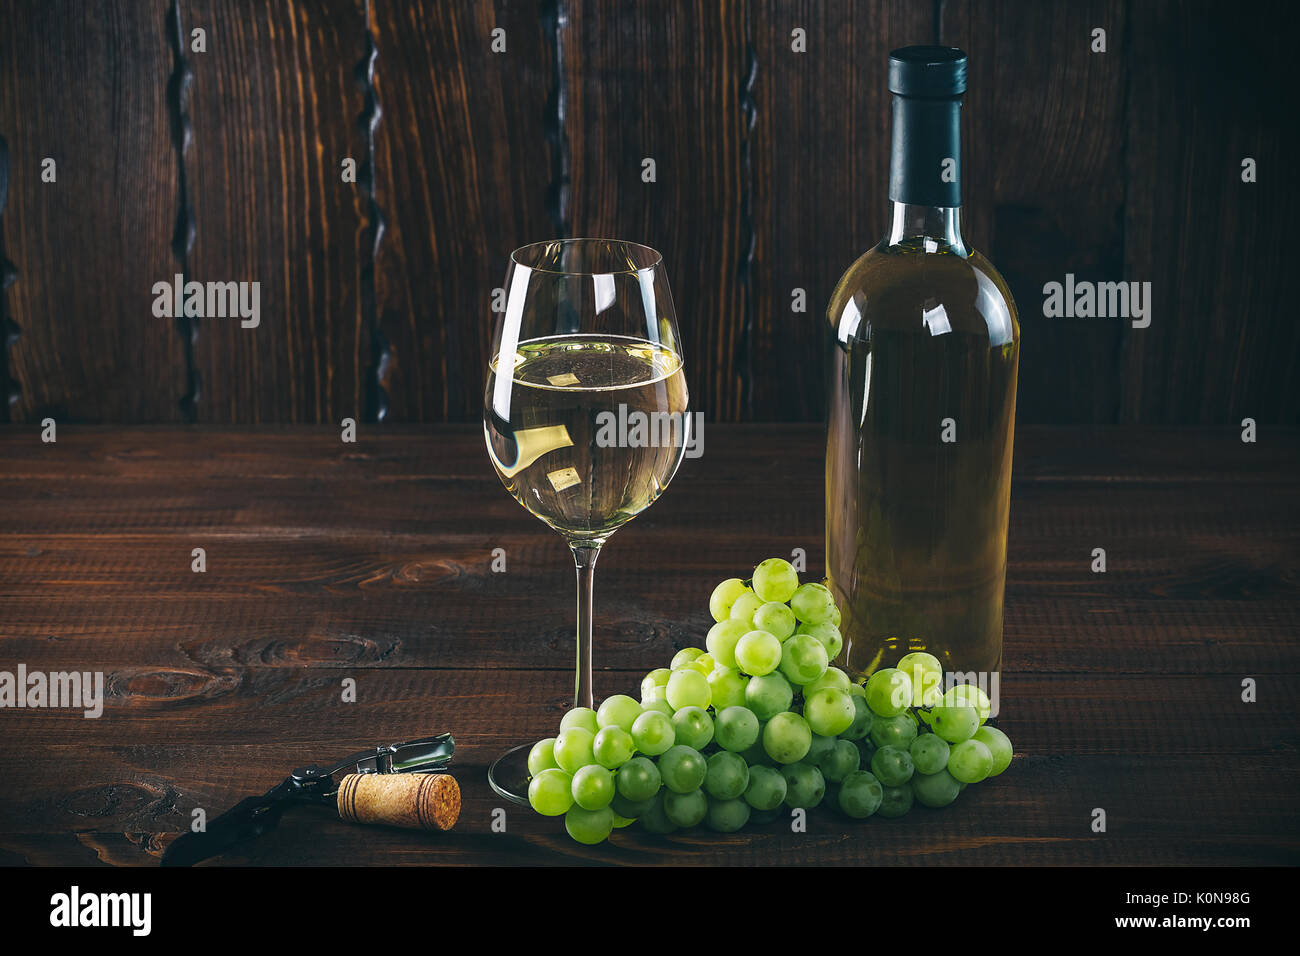 Splendido vino bianco in vetro del vino con un grappolo di uva verde, su uno sfondo di legno con spazio libero Foto Stock